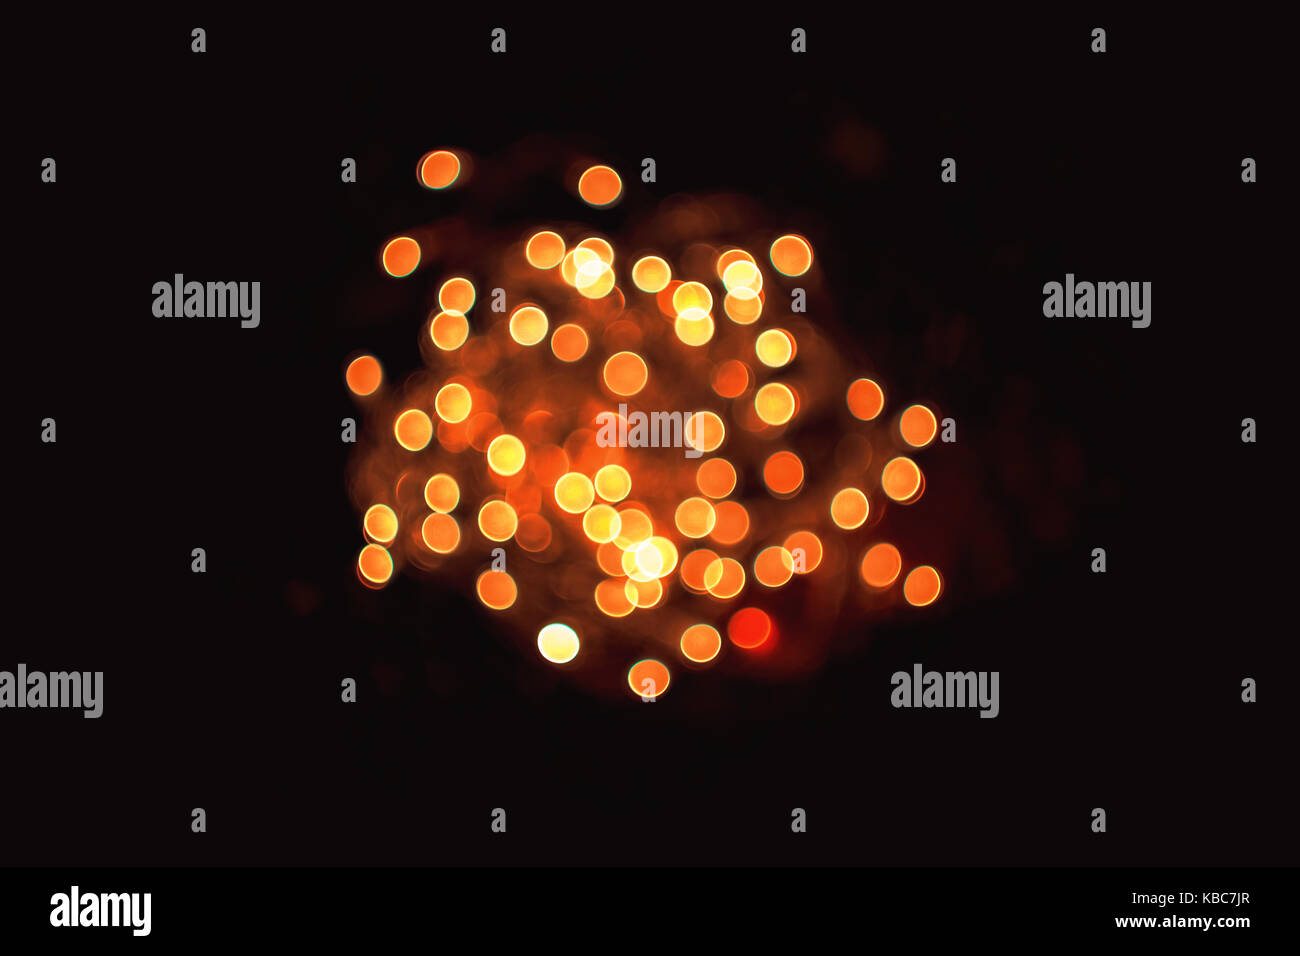 Resumen cerca de contorneado swirly desenfocado naranja luces navideñas tomadas con lentes vintage de helios 44-2 durante la noche Foto de stock